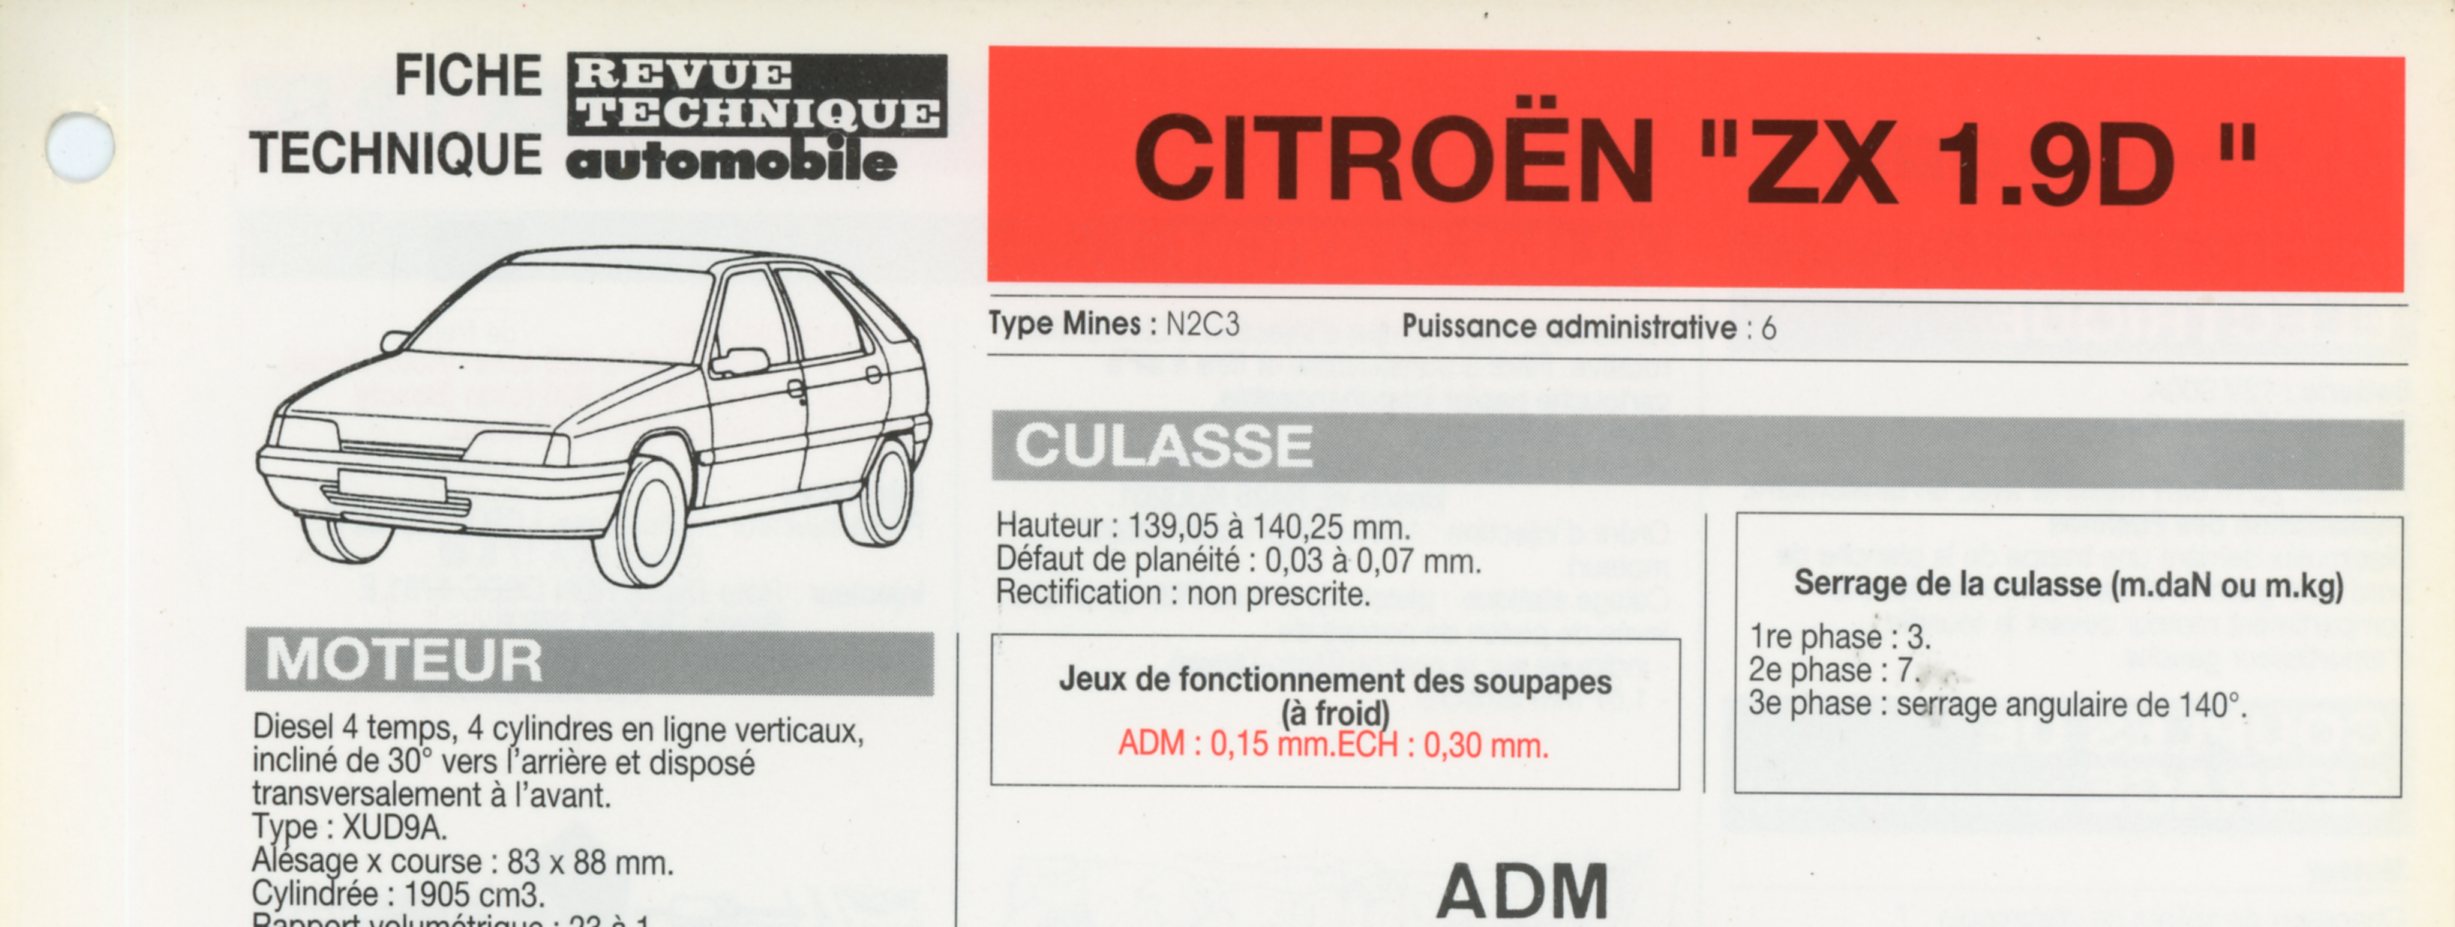 FICHE TECHNIQUE CITROËN ZX 1.9 D - FICHE RTA AUTOMOBILE 1993